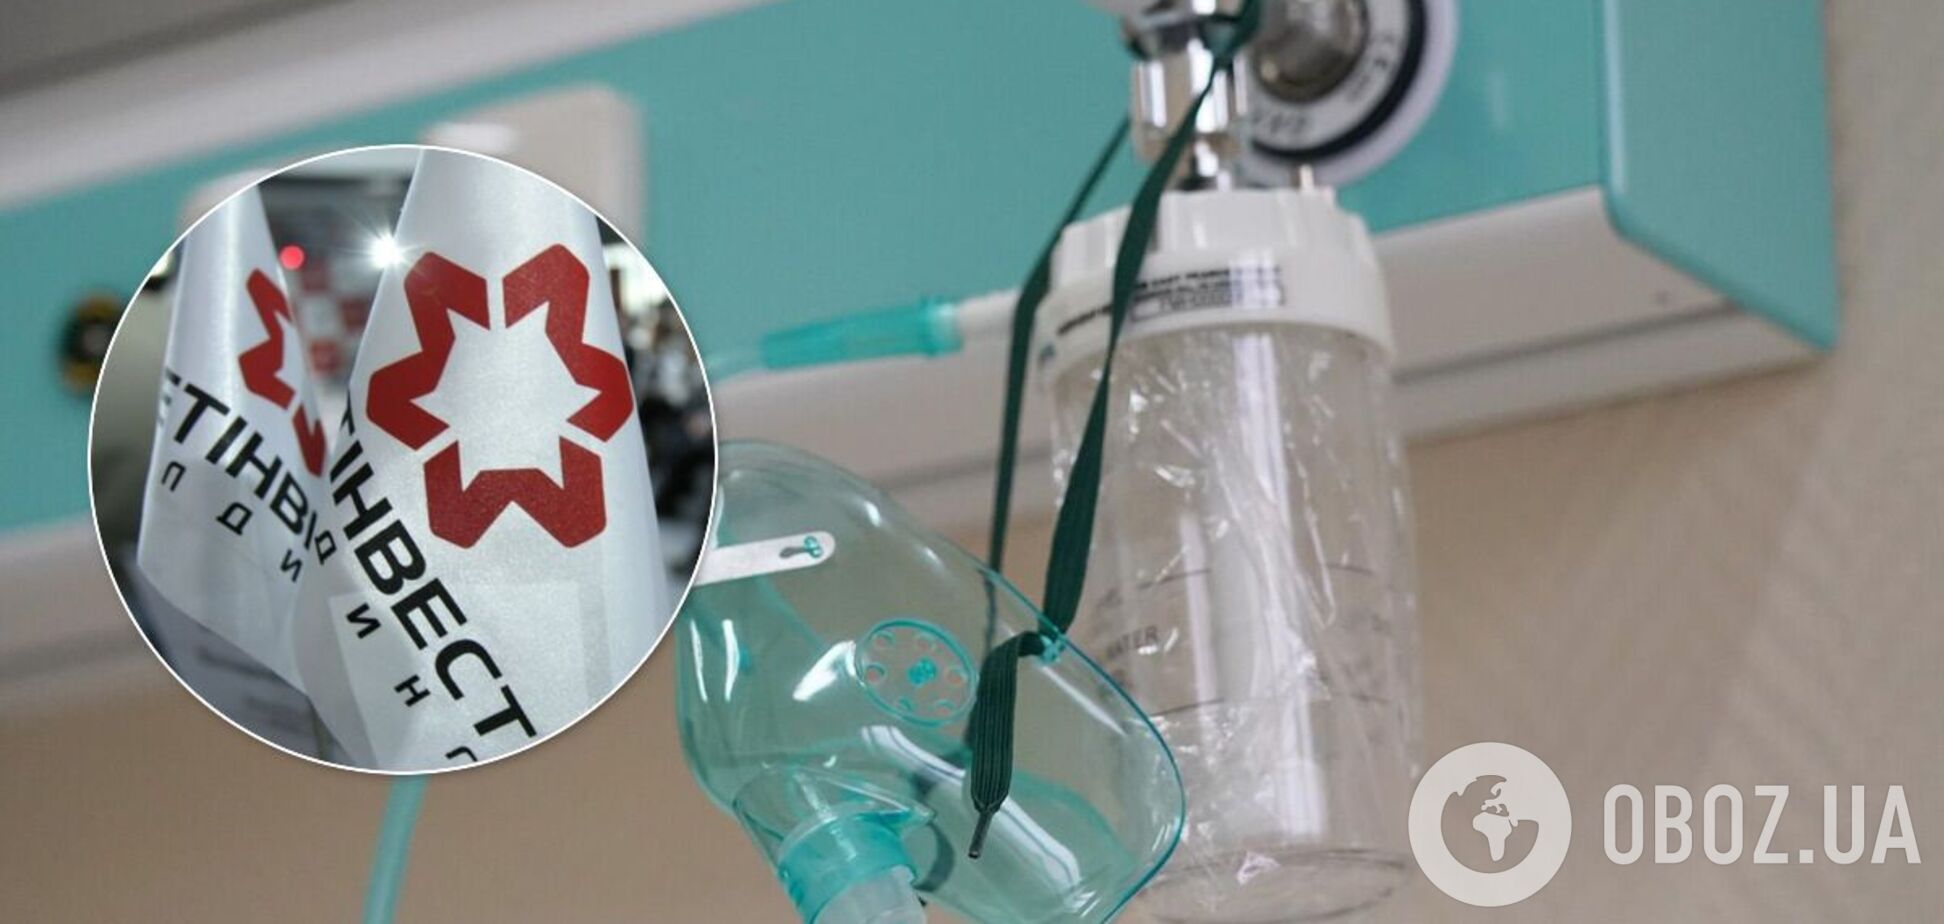 В Мариуполе меткомбинаты увеличили поставки кислорода в больницы